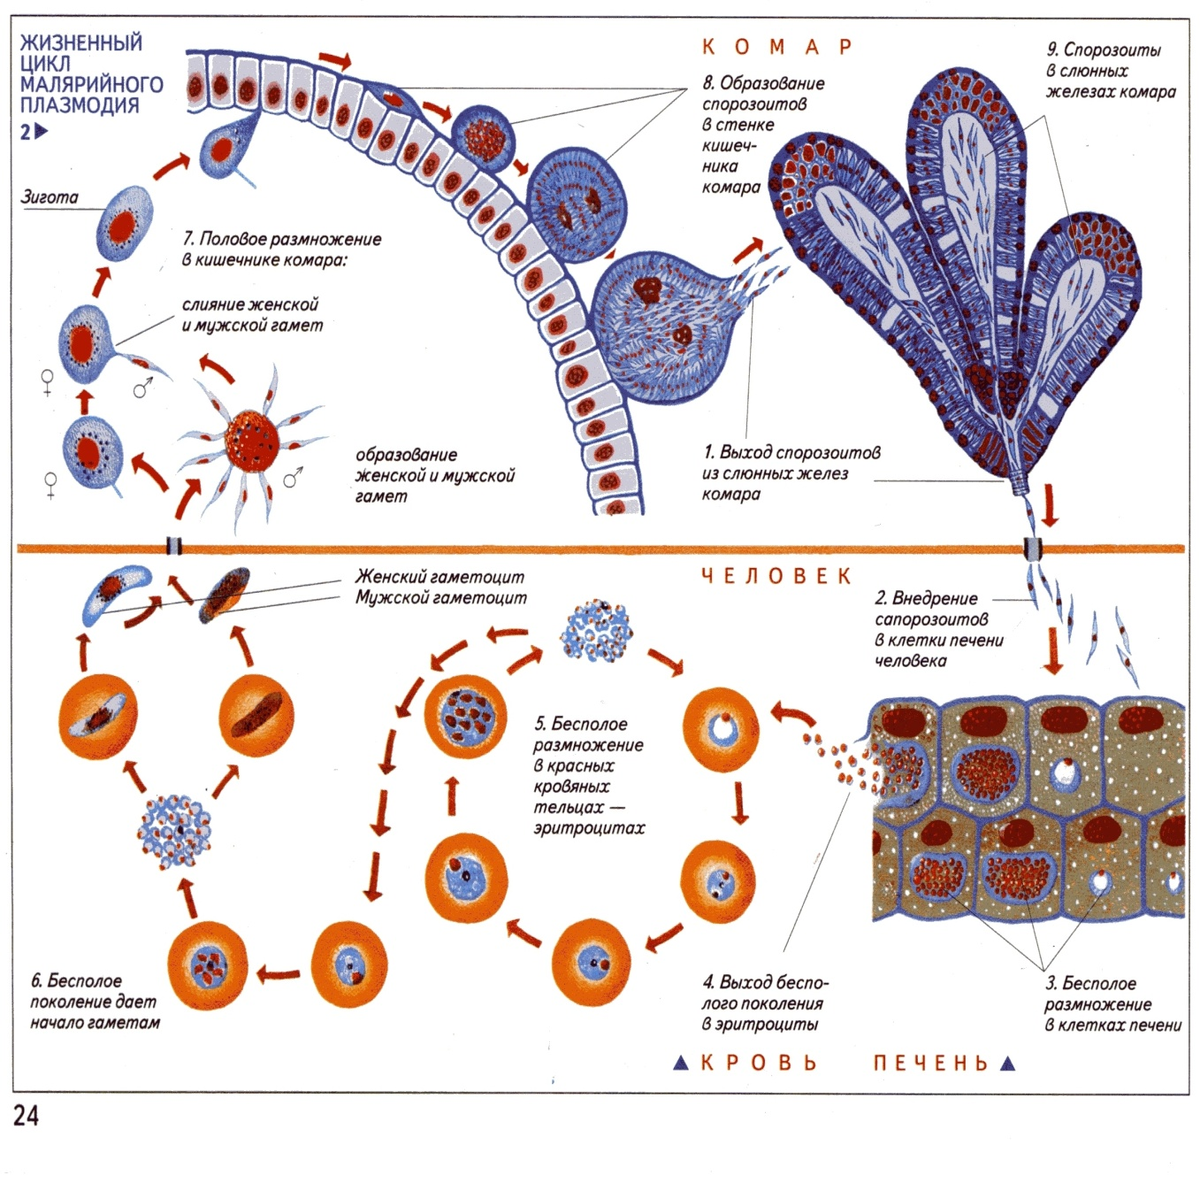 Цикл размножения малярийного плазмодия. Стадии жизненного цикла малярийного плазмодия. Жизненный цикл малярийного плазмодия схема. Цикл развития малярийного плазмодия. Малярия цикл развития малярийного плазмодия